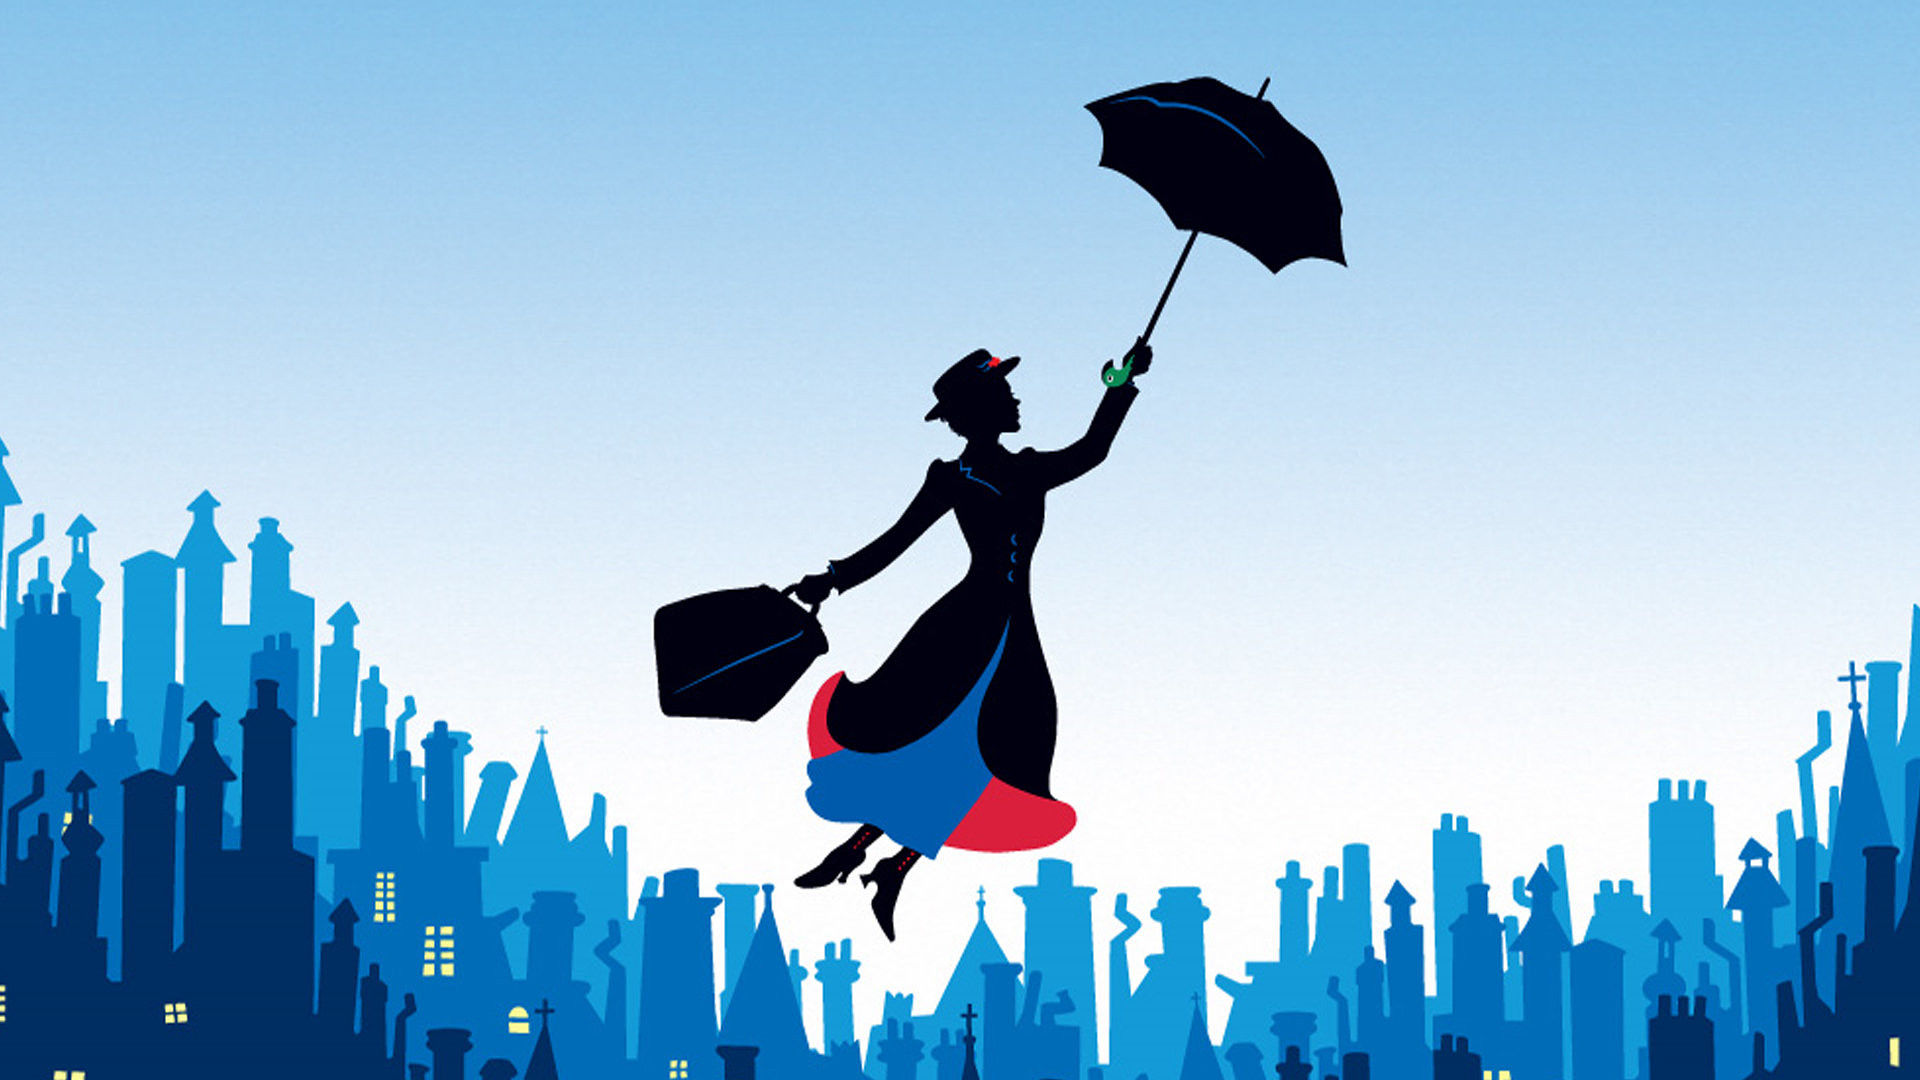 Tecknad bild på den flygande Mary Poppins.